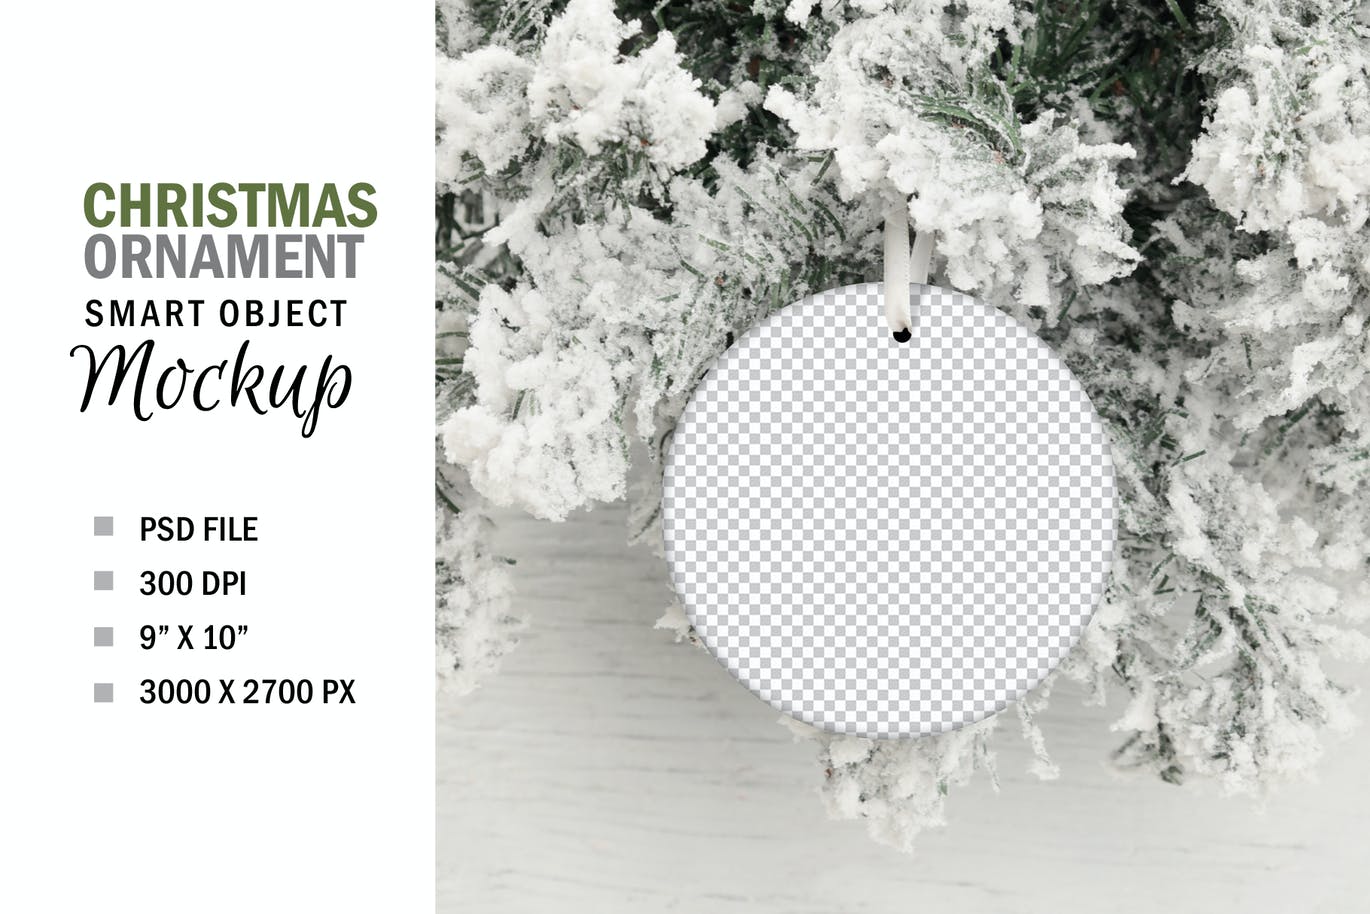 悬挂式圣诞树圆形装饰品设计样机 Round Christmas Tree Ornament Mockup设计素材模板